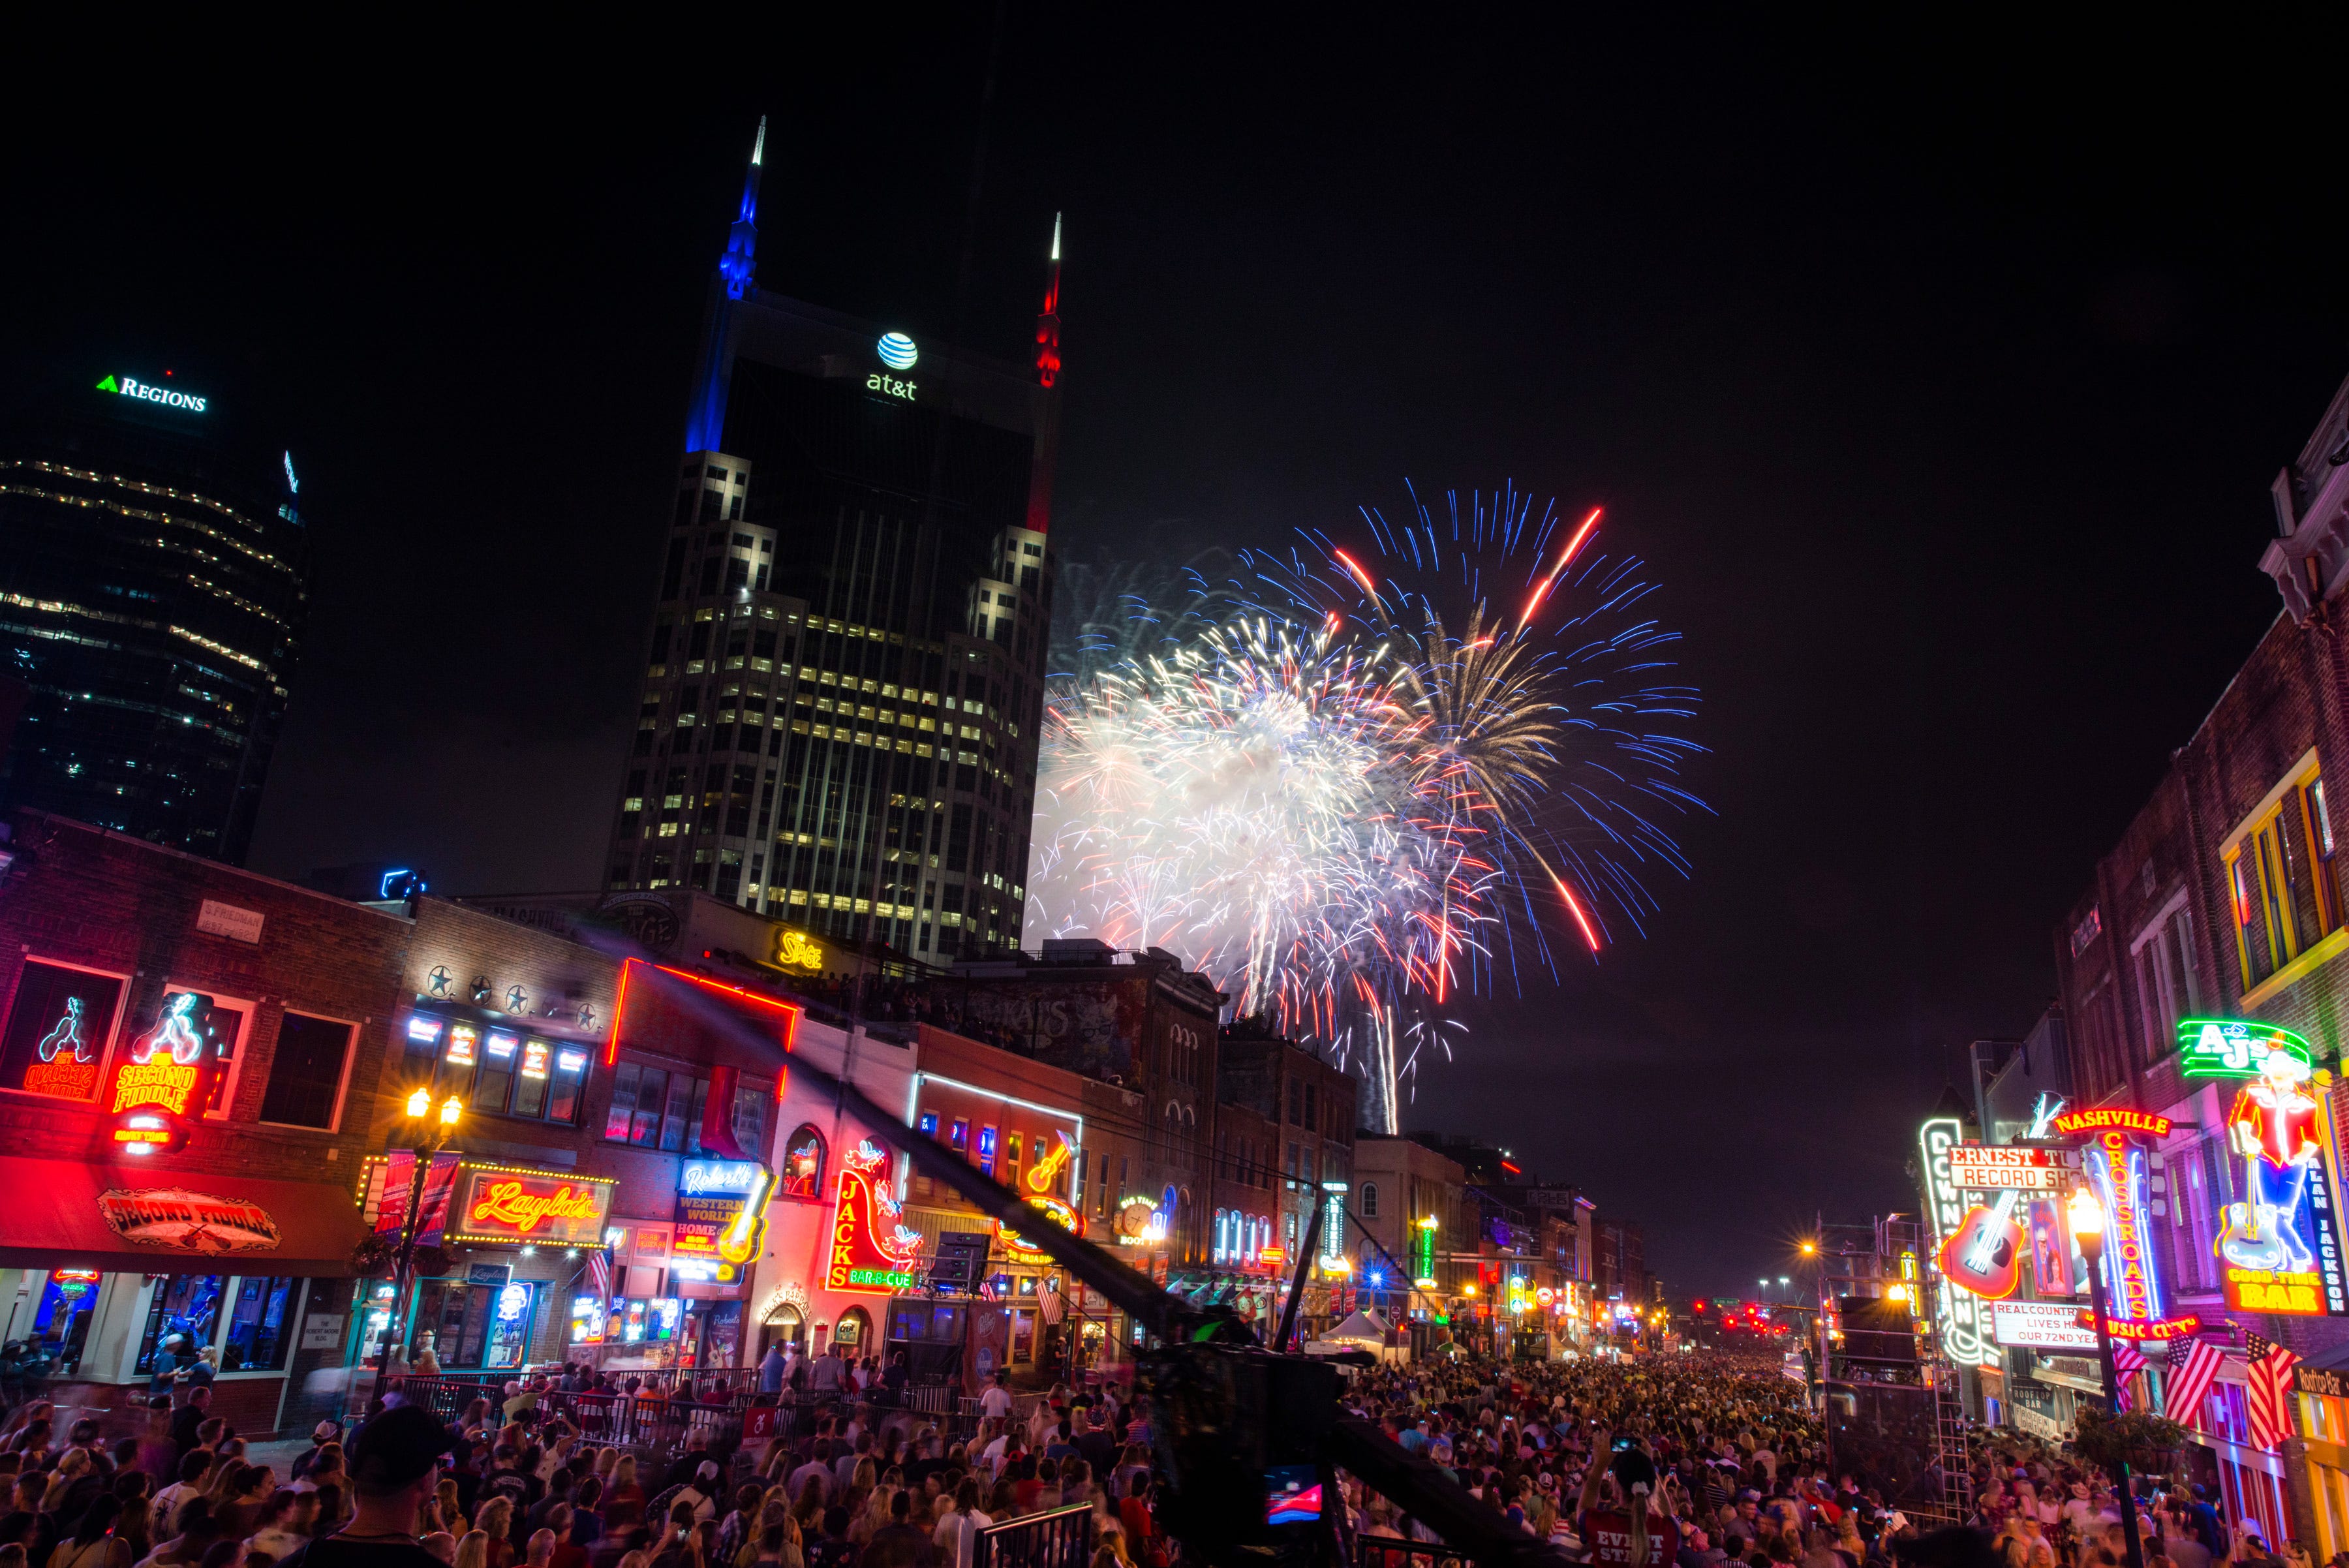 Nashville Fourth of July celebration back on track after weather delay